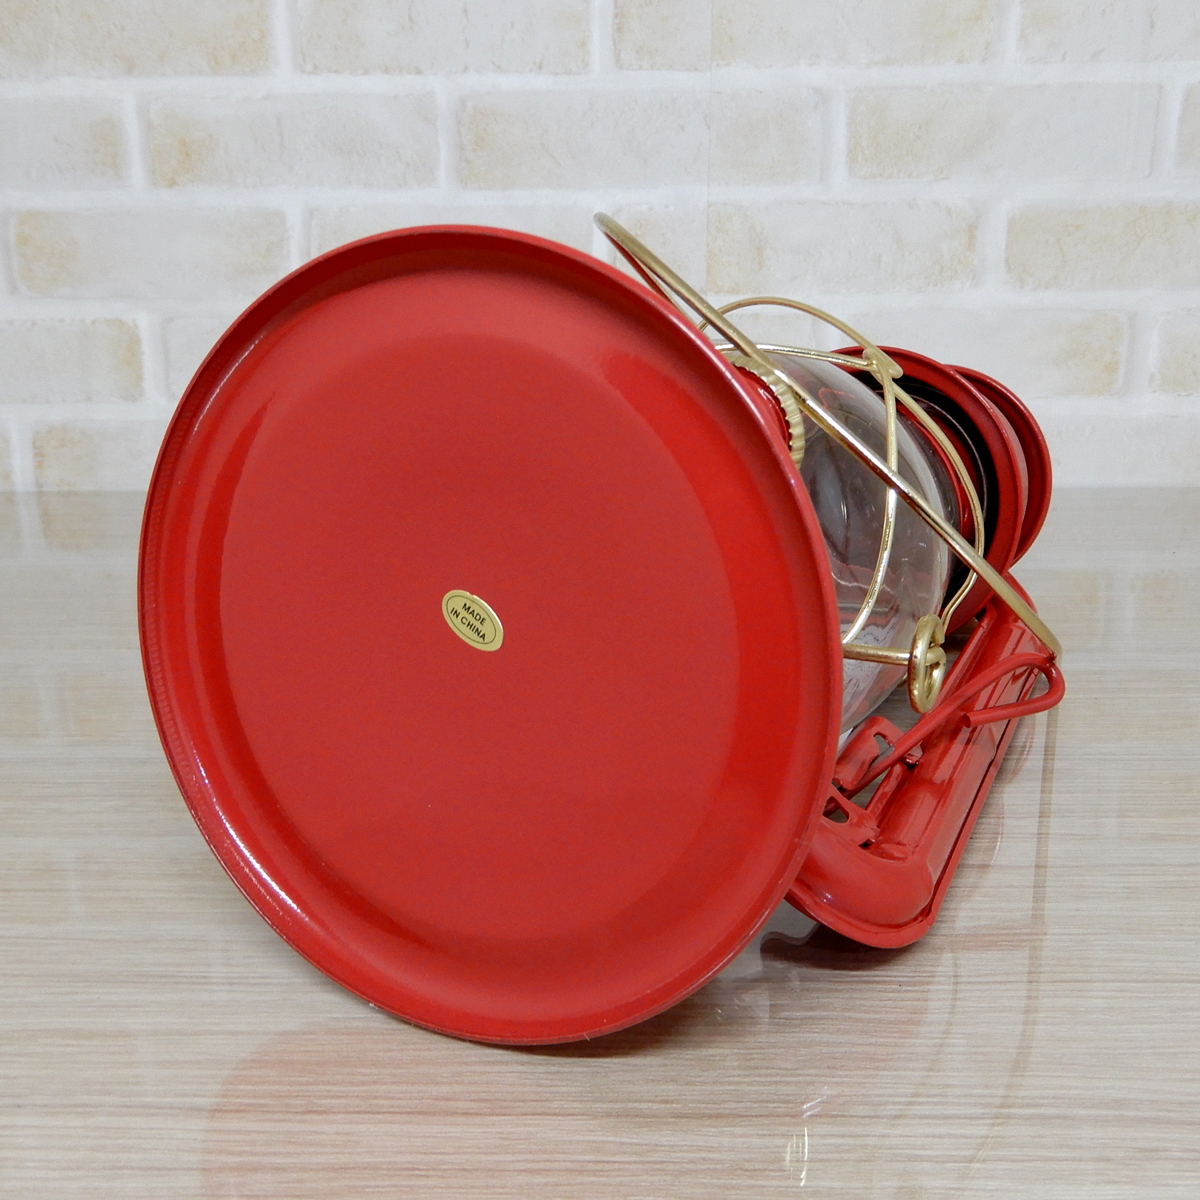 替芯2本付【送料無料】新品 Dietz #20 Junior Oil Lantern - Red Brass Trim 【日本未発売】◇デイツ 赤金 レッド ハリケーンランタン 真鍮